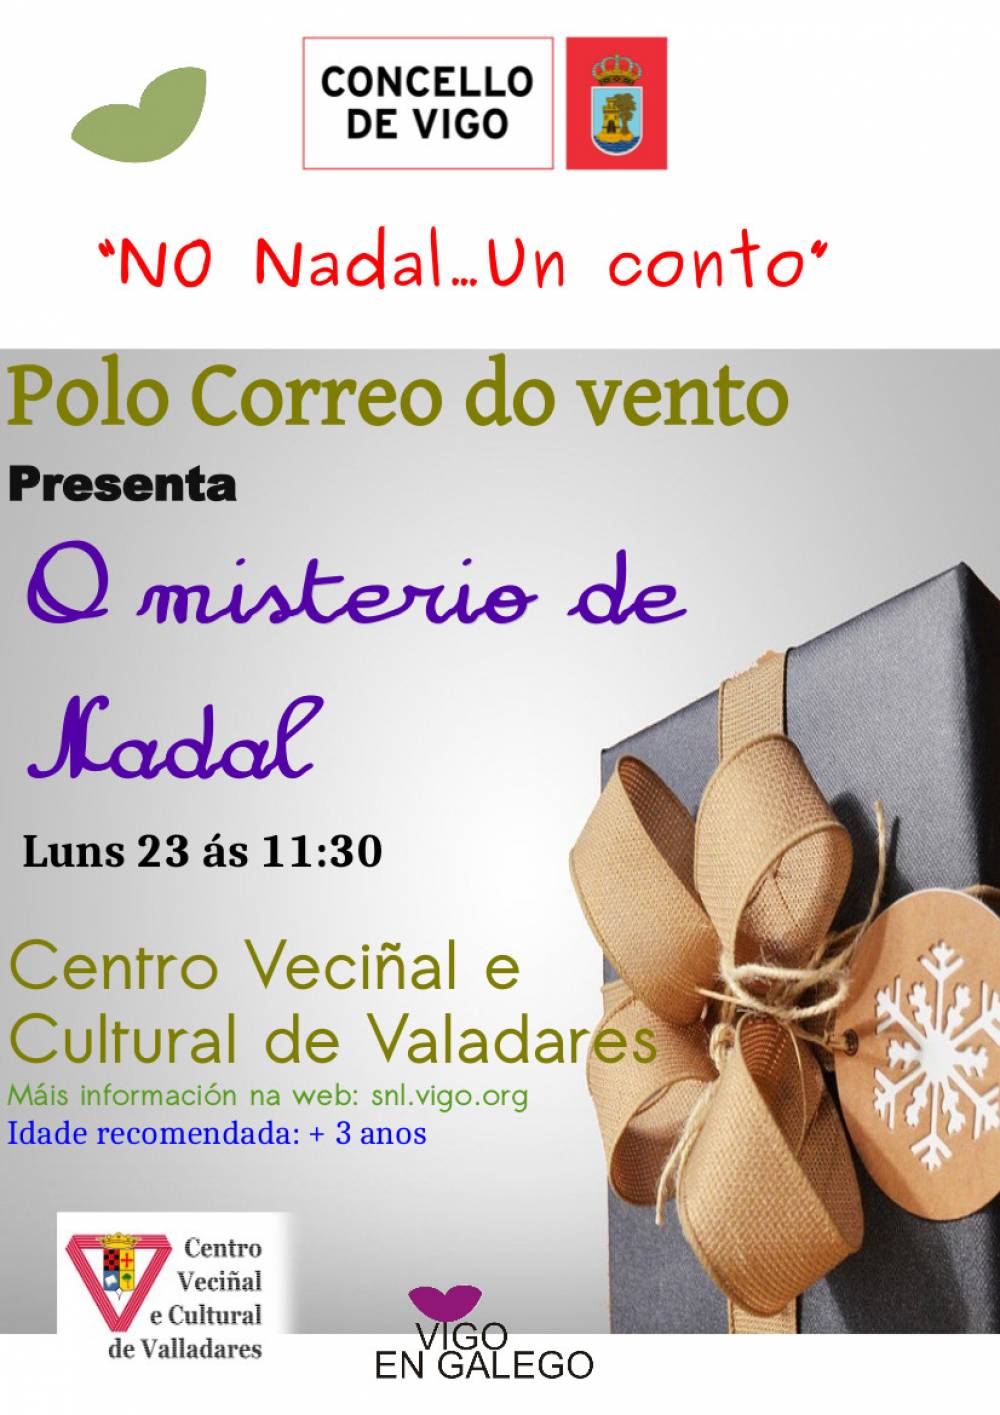 No Nadal... un conto: "O misterio de Nadal" (23 decembro 2019) en Valadares